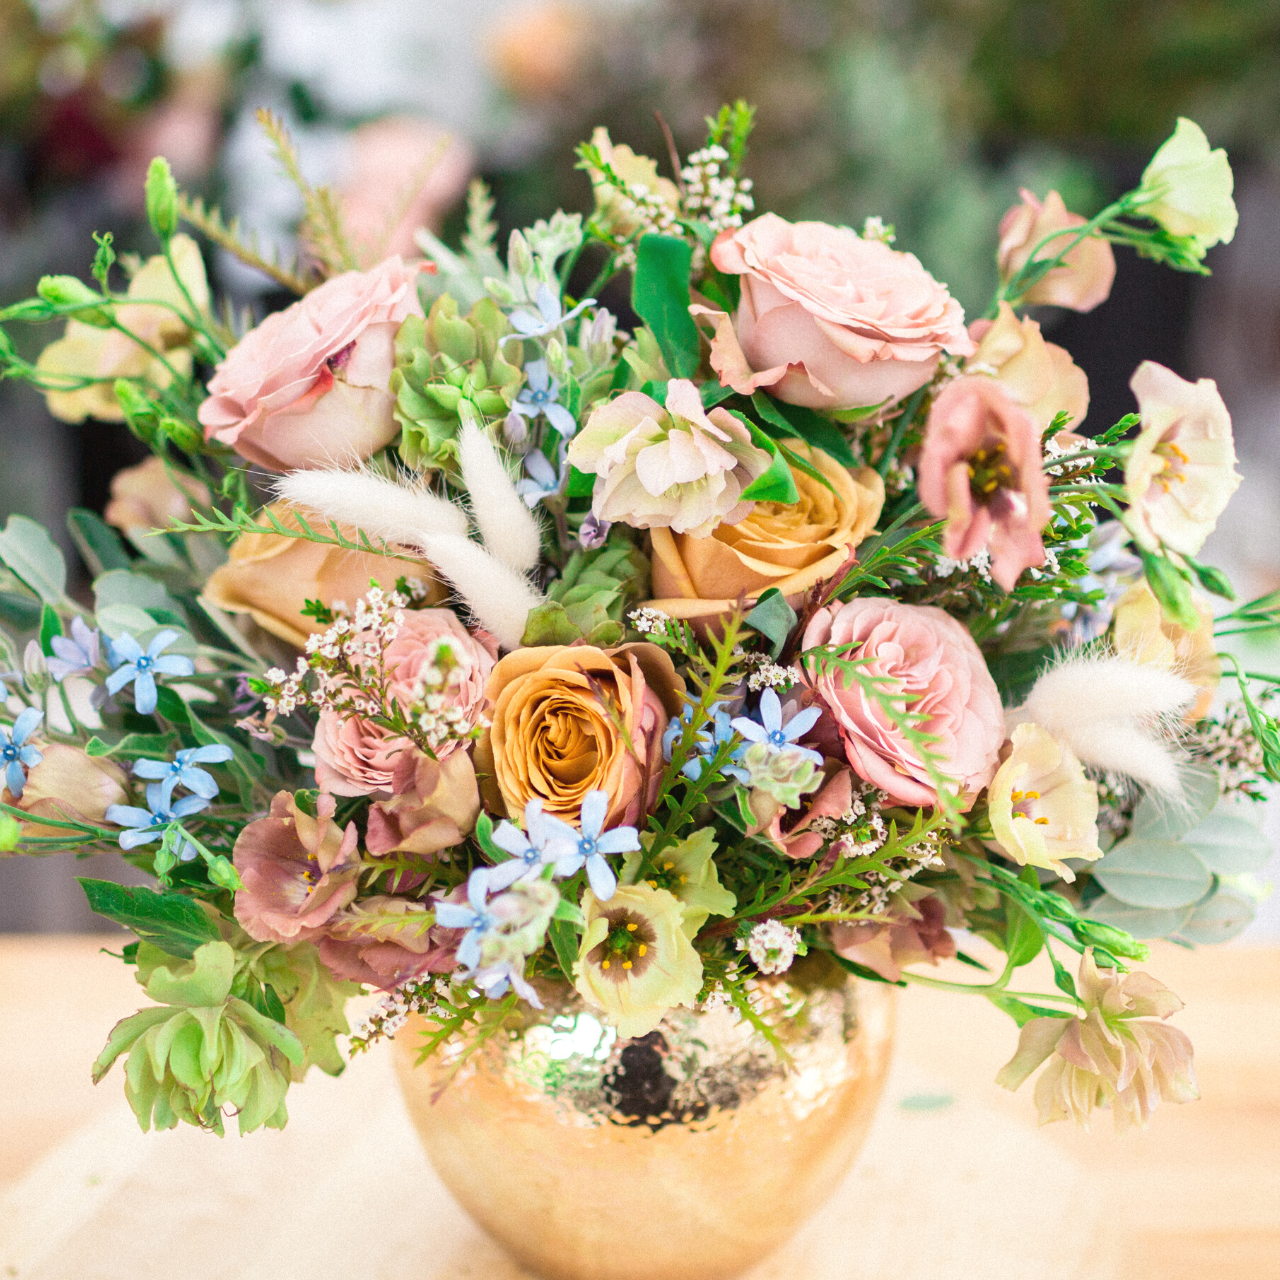 DIY Bridal Bouquet - Vase Technique